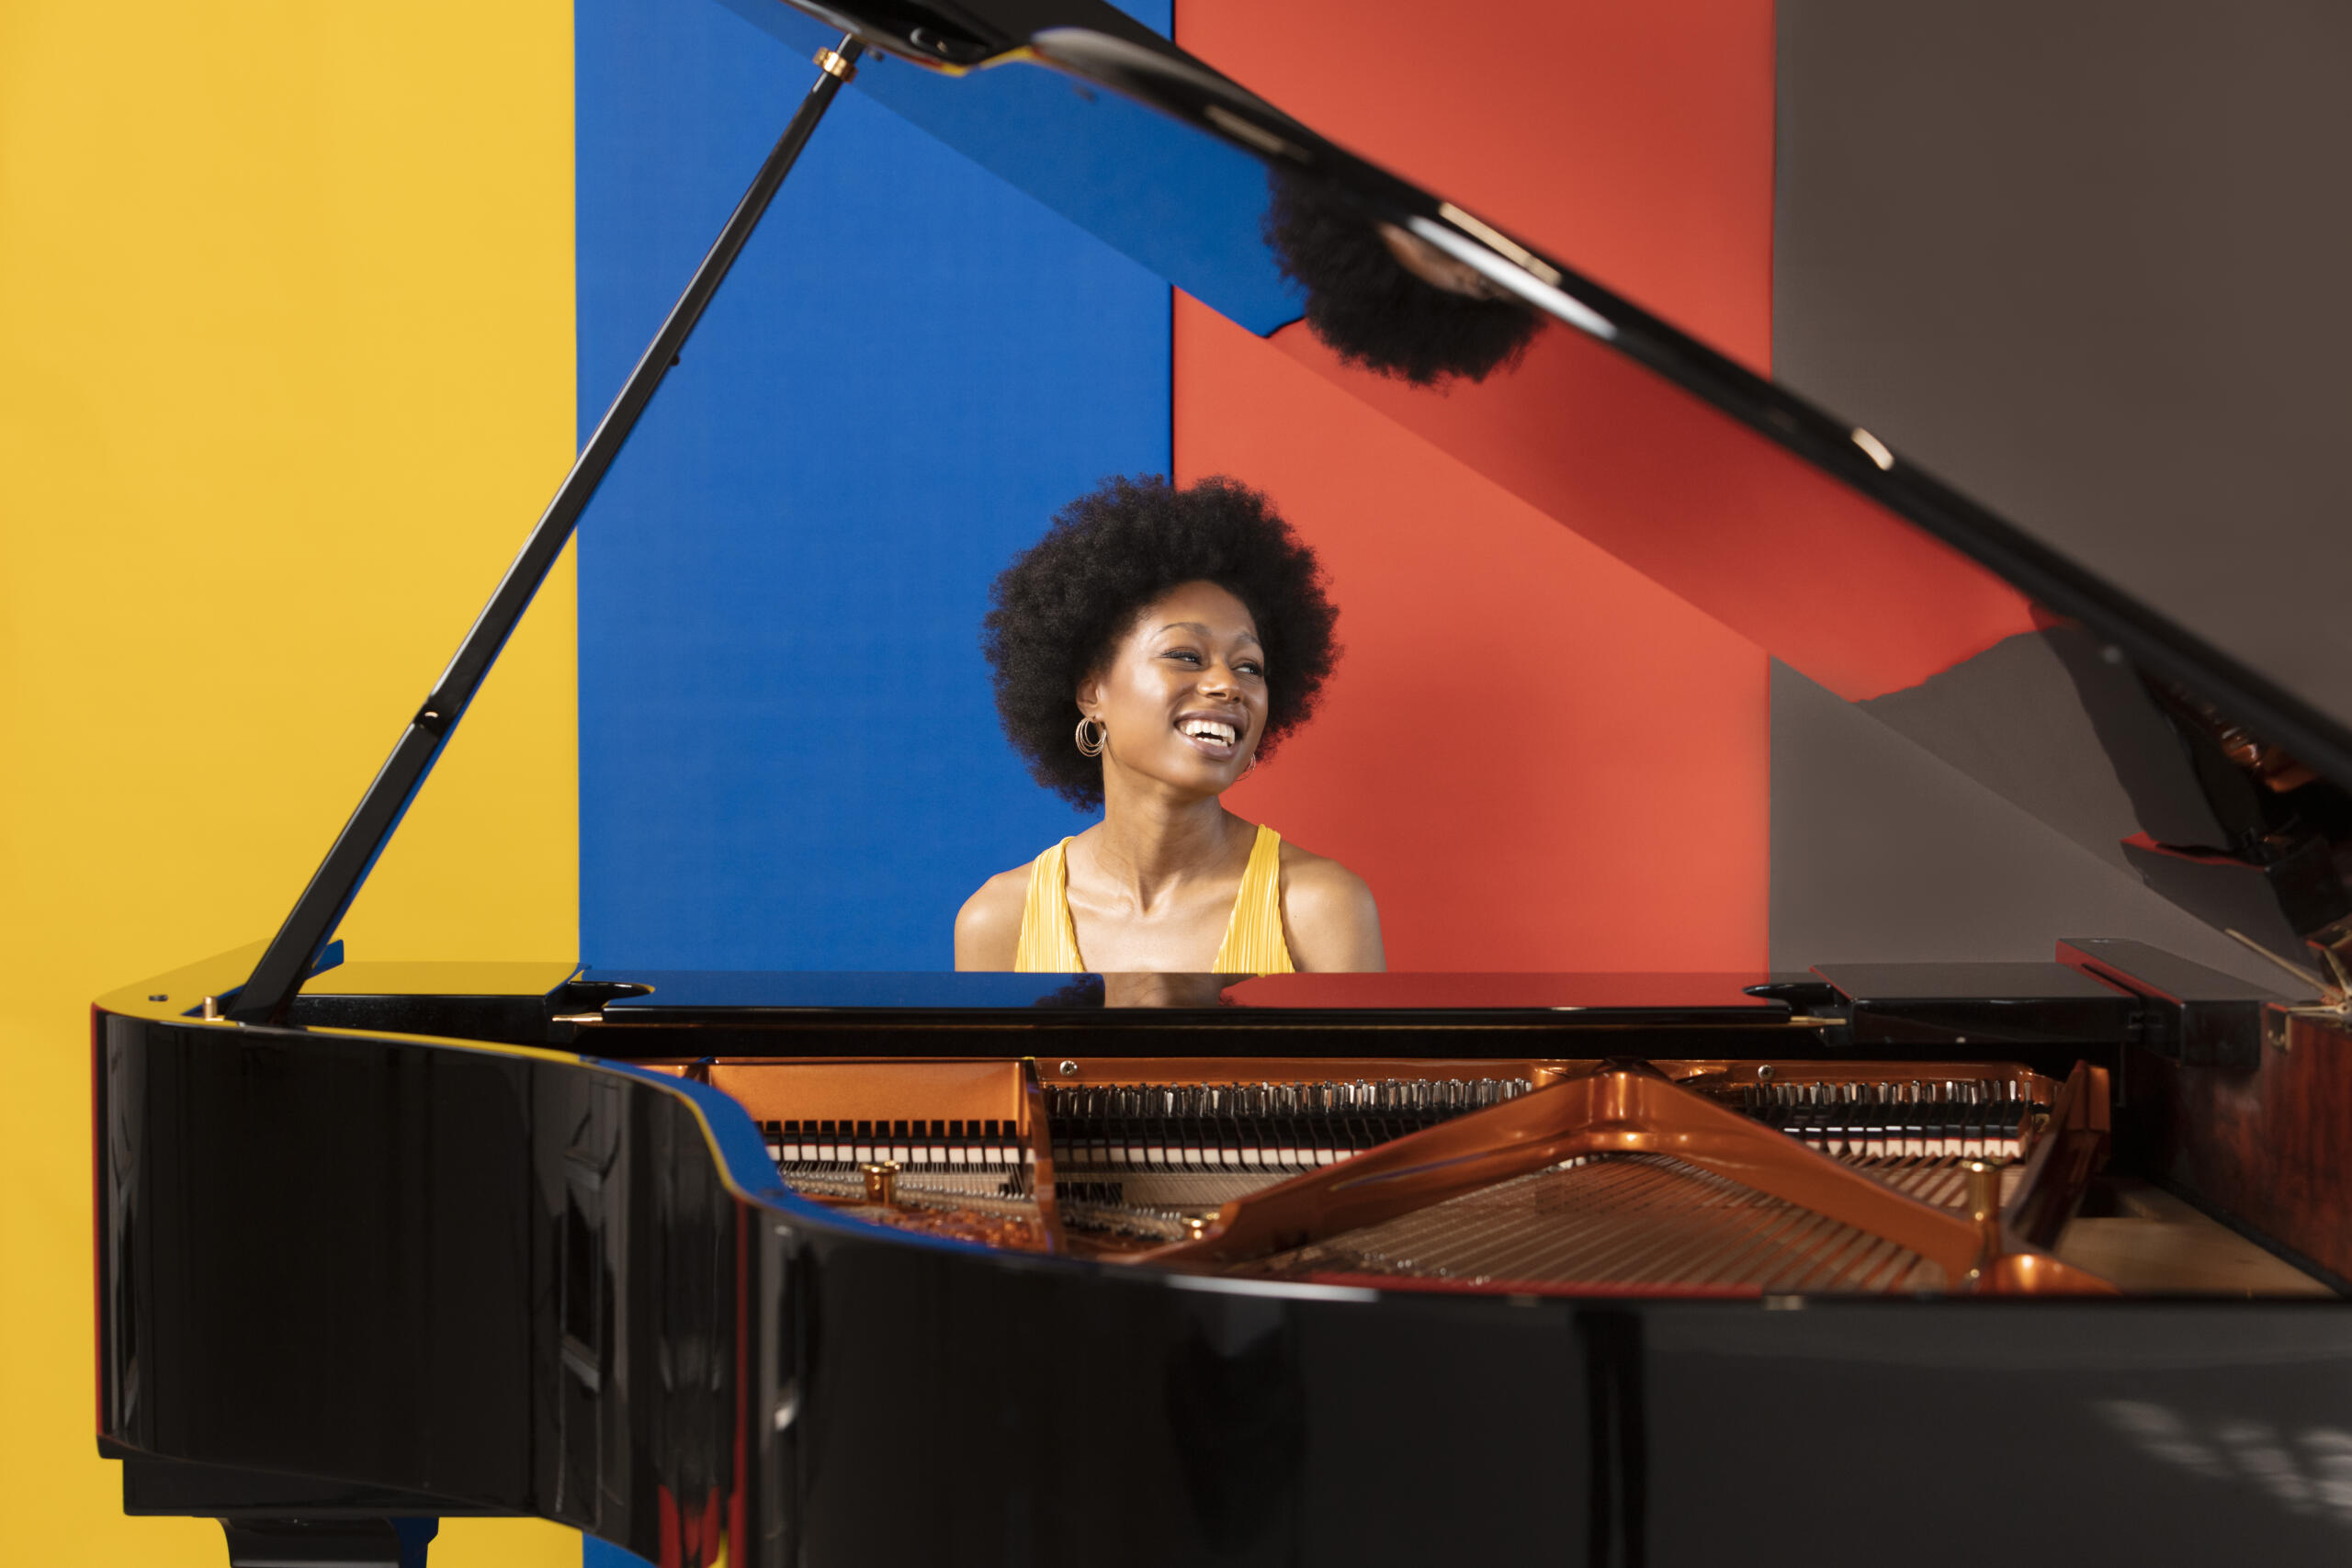 Porträt der Pianistin Isata Kanneh-Mason. Sie sitzt in einem gelben Kleid lachend hinter einem Flügel. Die Wand hinter ihr ist gelb, blau rot und braun gestreift.